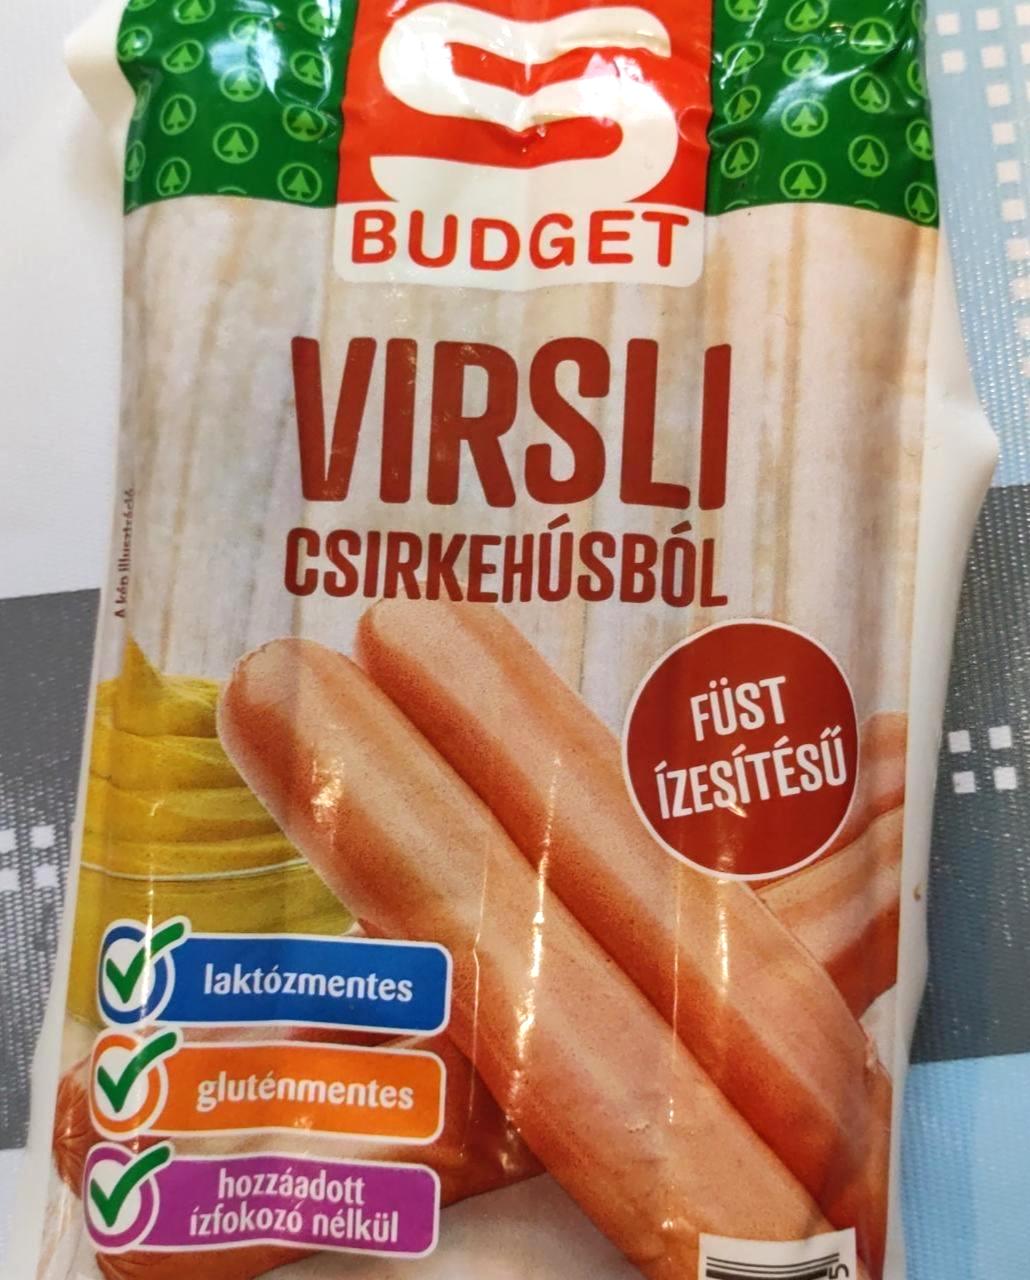 Képek - Virsli csirkehúsból, füst ízesítésű S Budget